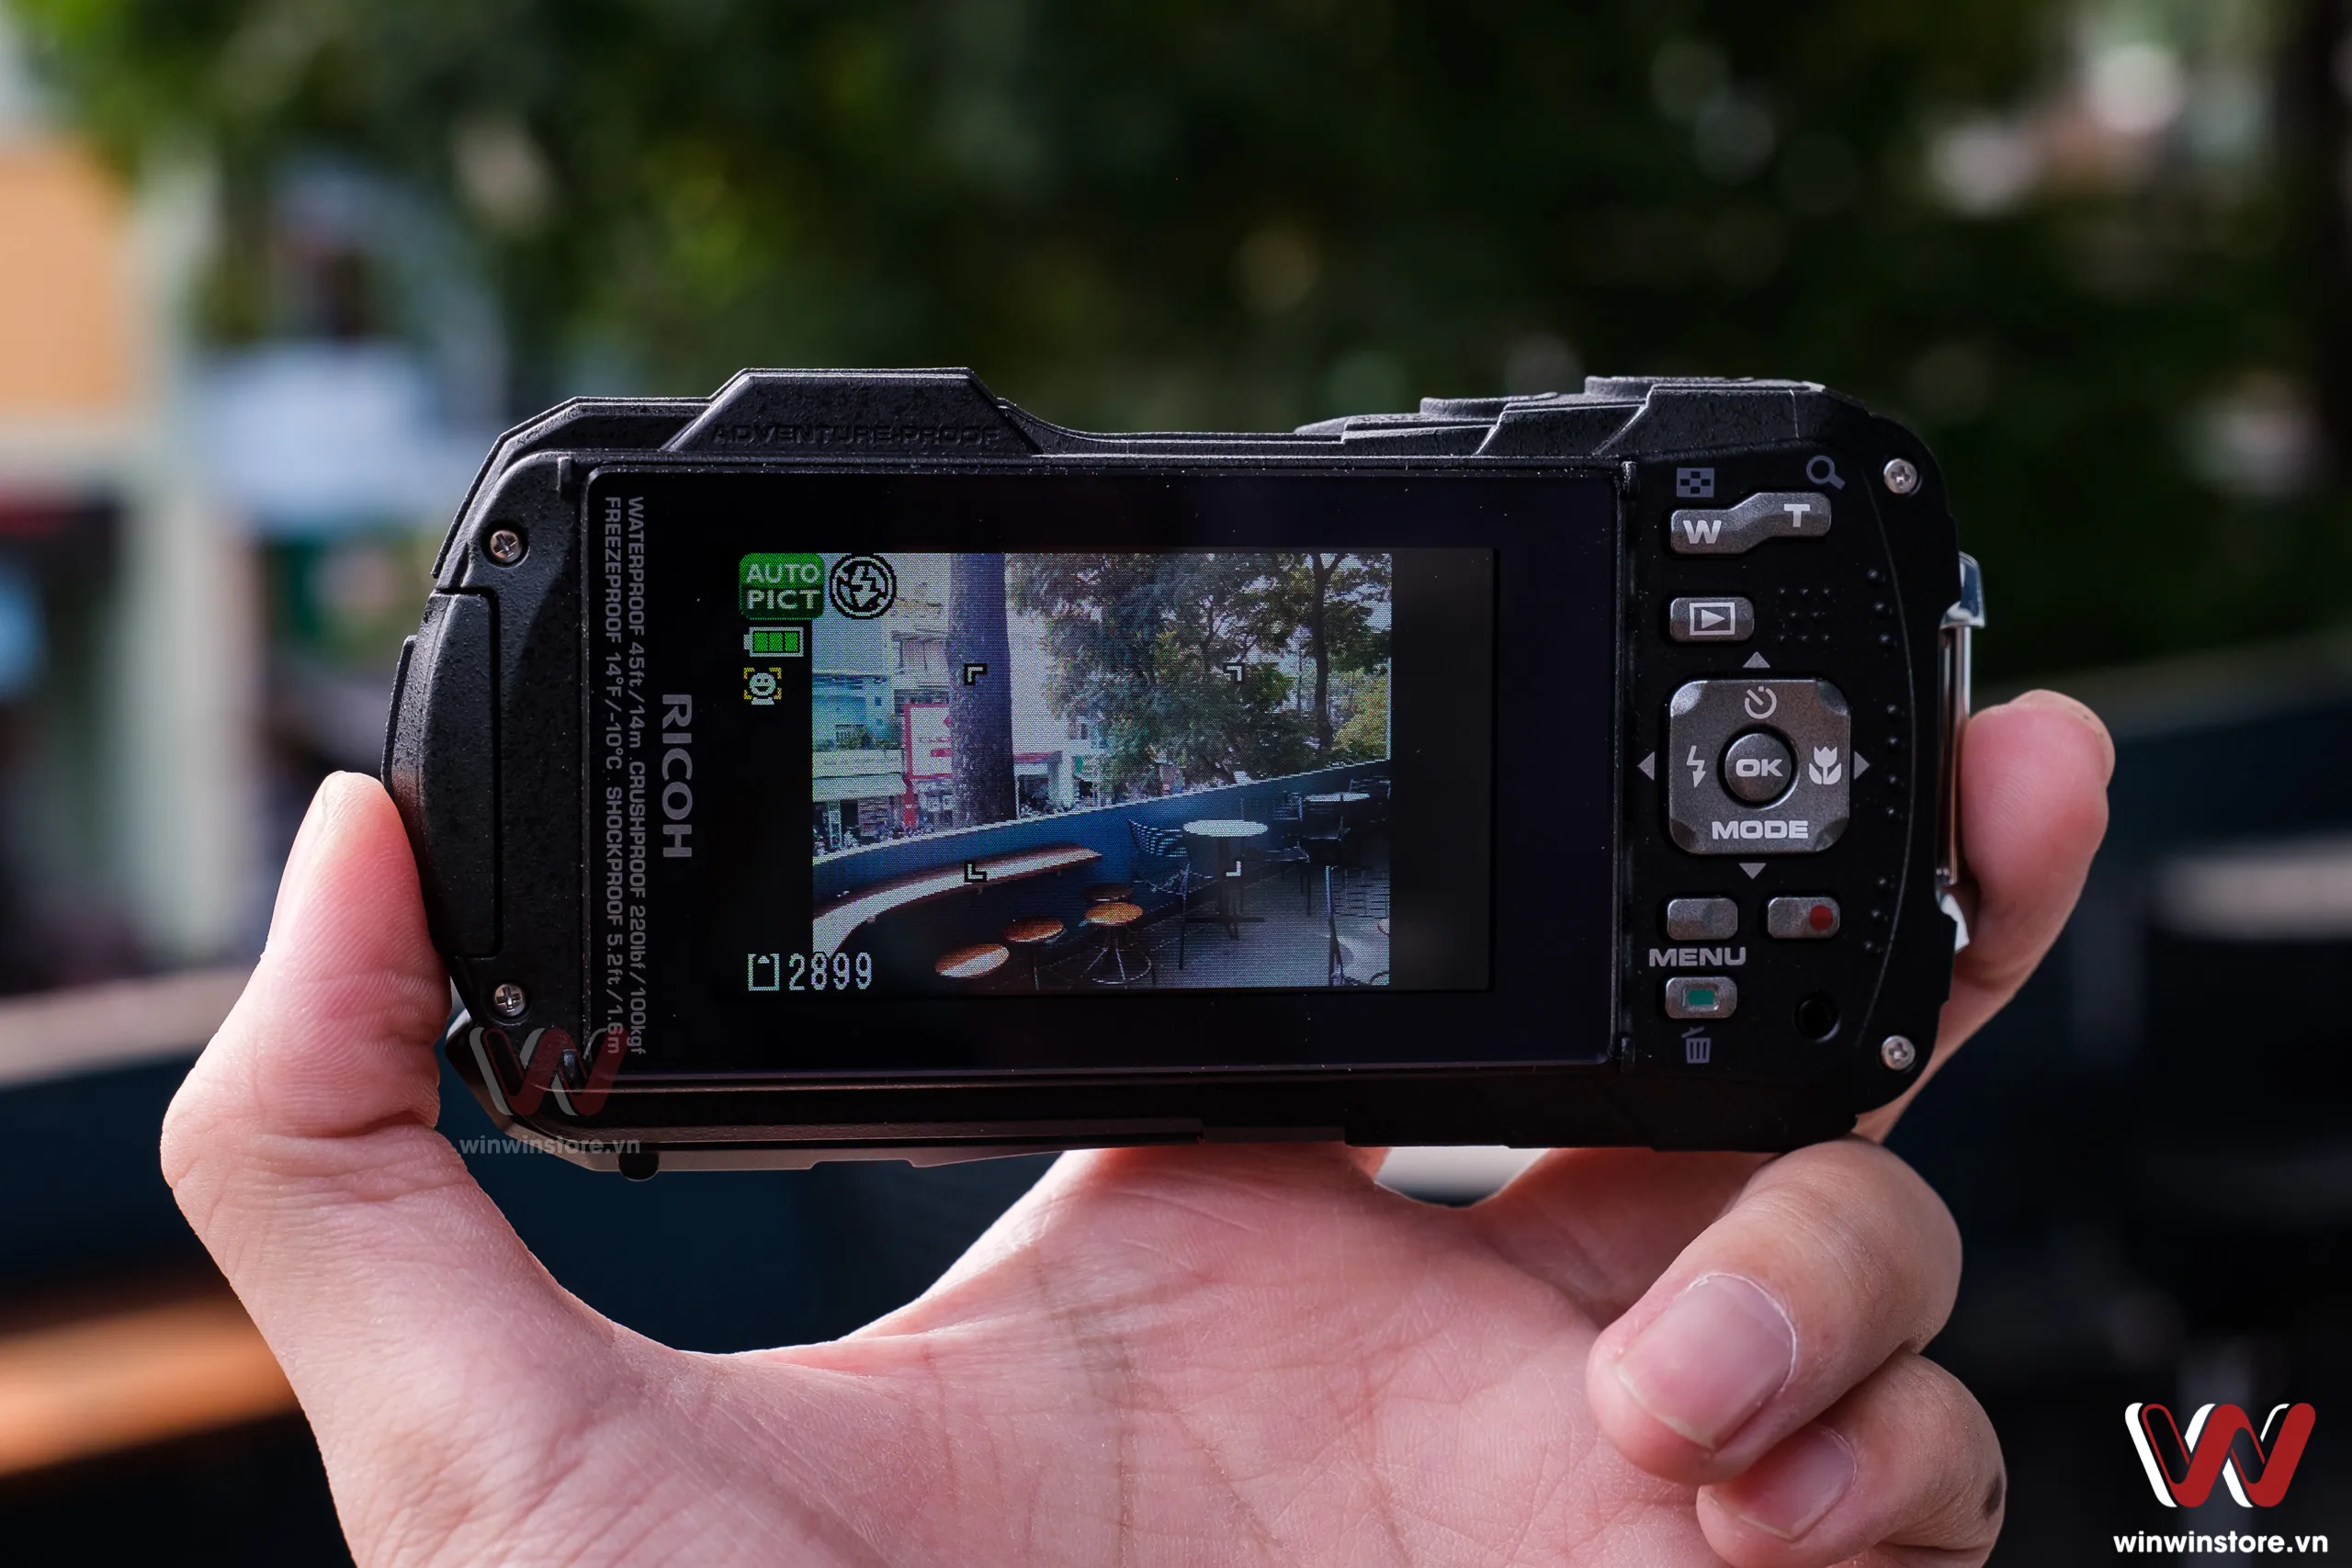 Trên tay máy ảnh compact chống nước Ricoh WG-80 bền bỉ cho các nhu cầu chụp đặc biệt